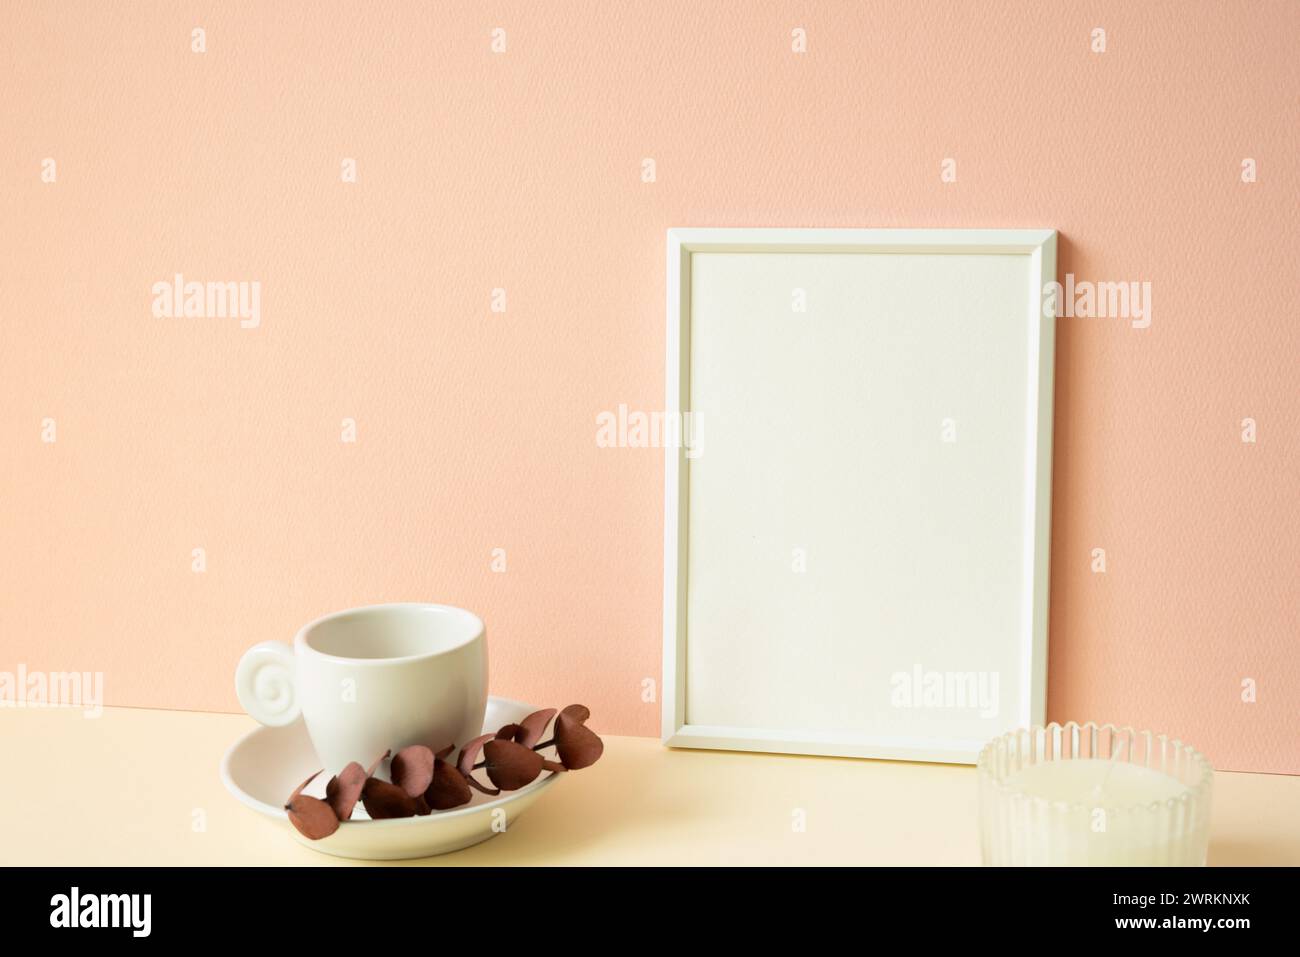 Cornice bianca con tazza da caffè e candela sul tavolo in avorio. sfondo rosa della parete Foto Stock